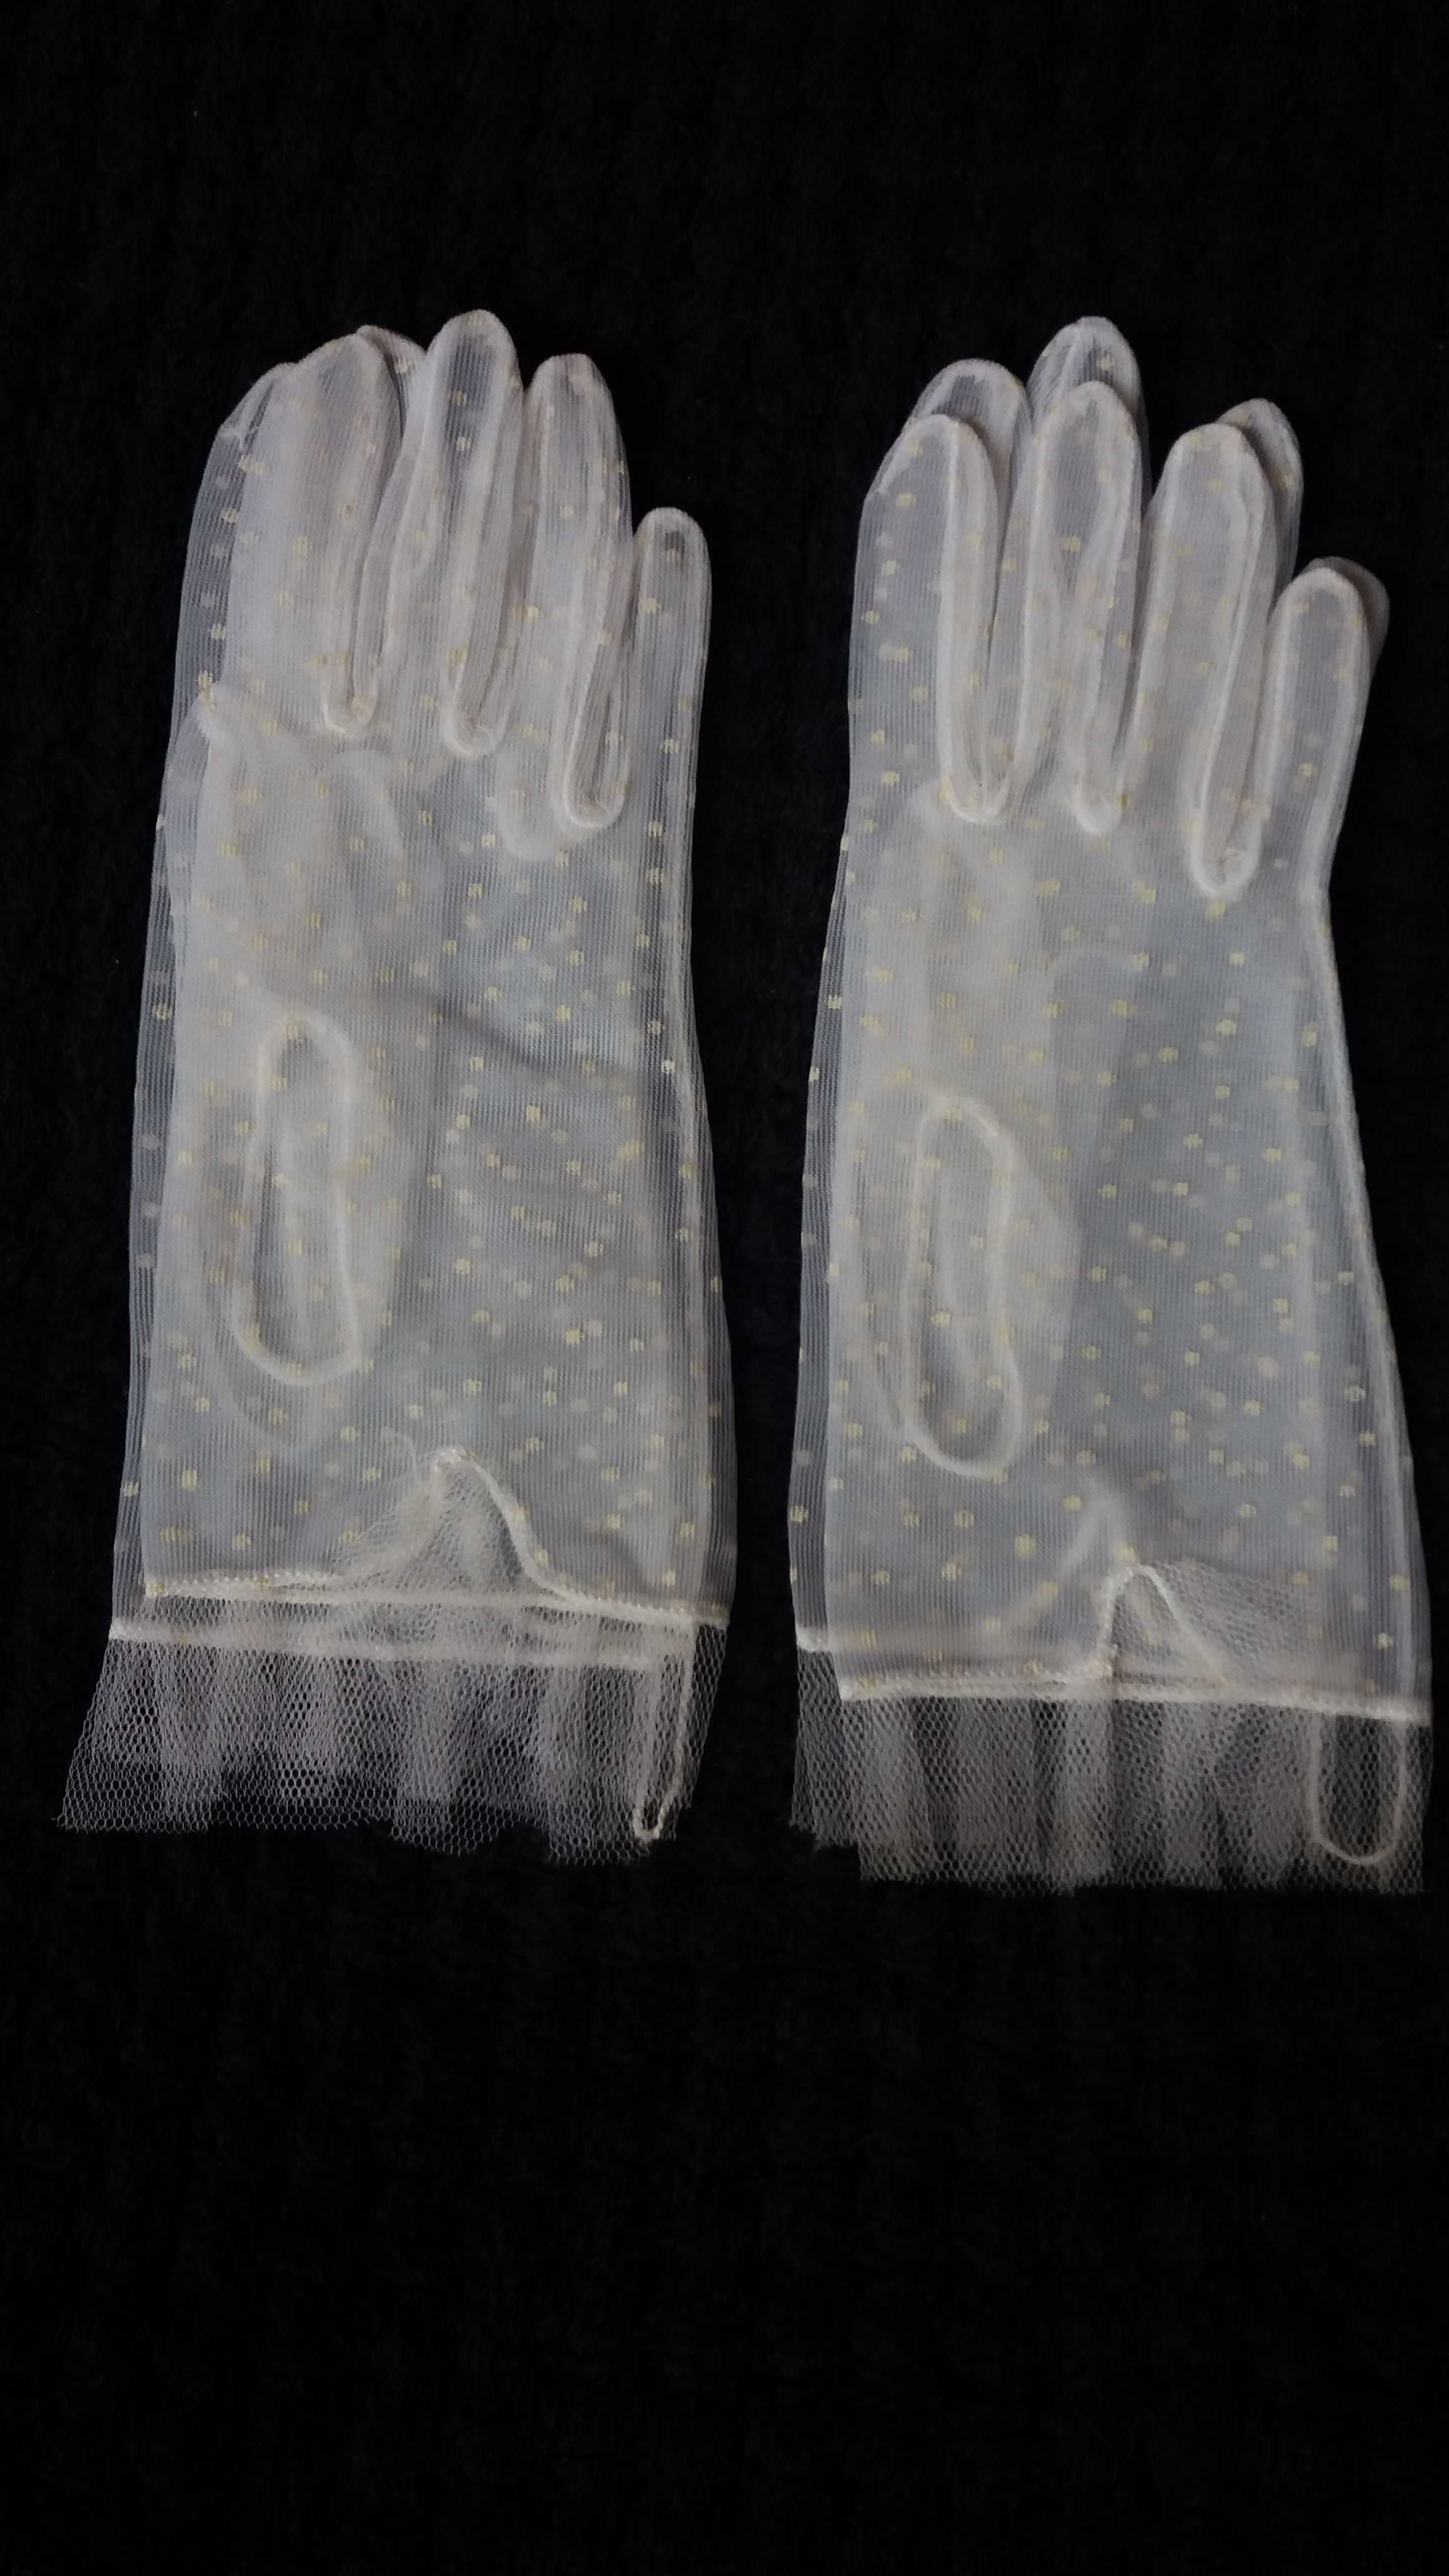 Komunijne rękawiczki dla bliźniaczek